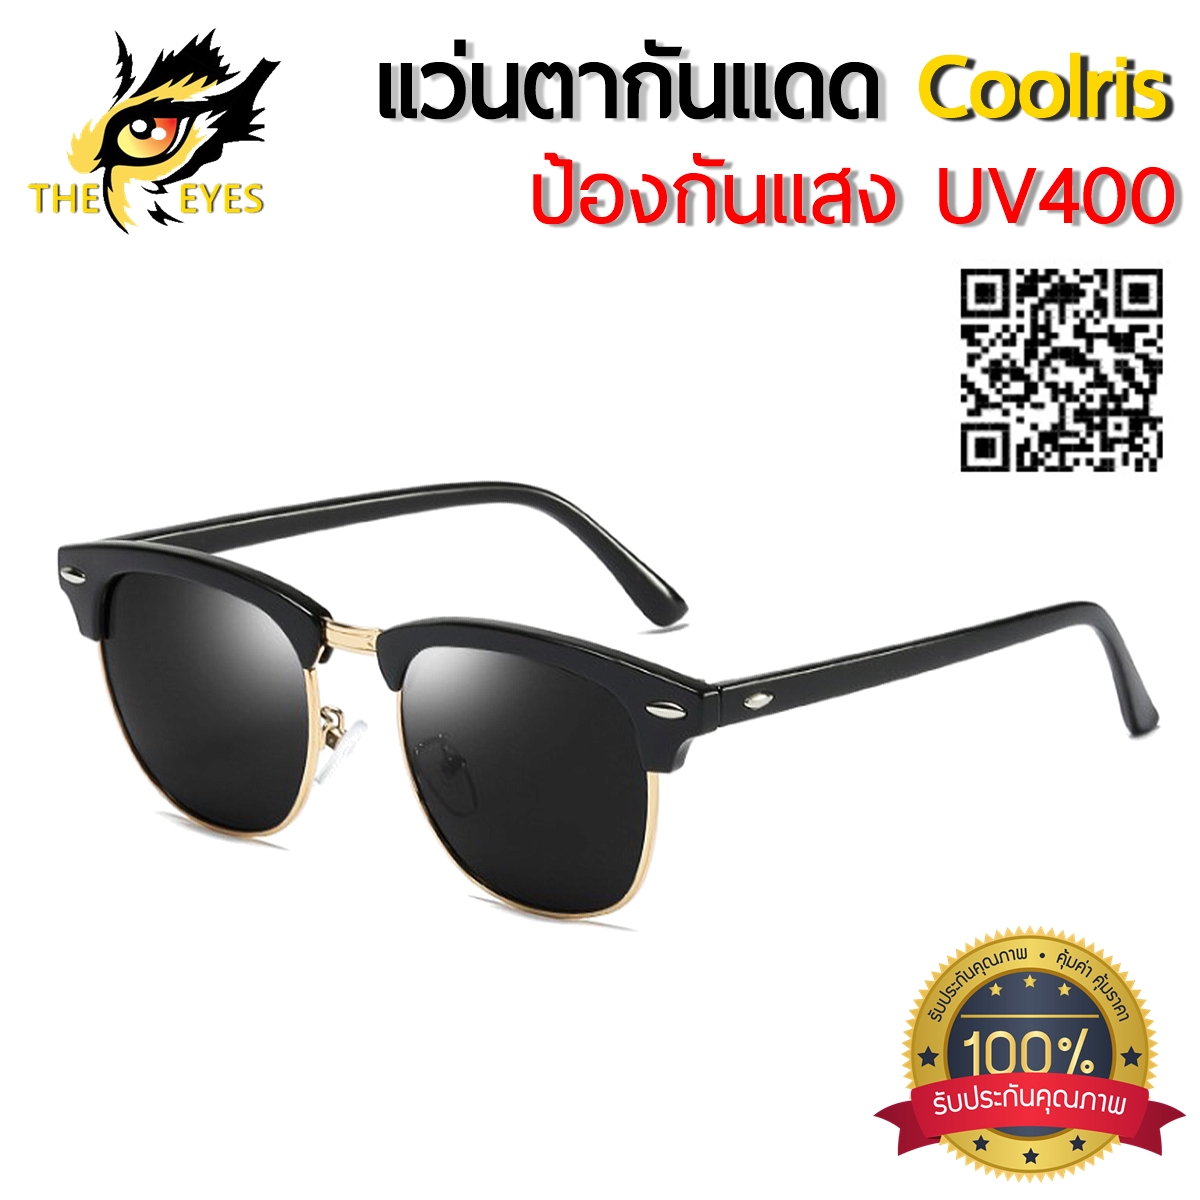 Coolsir แว่นตากันแดดสีดำ  แว่นตากรองแสง  ป้องกัน UV400 แว่นตาวินเทจ แว่นตาแฟชั่น  แว่นตาใส่ขับรถ